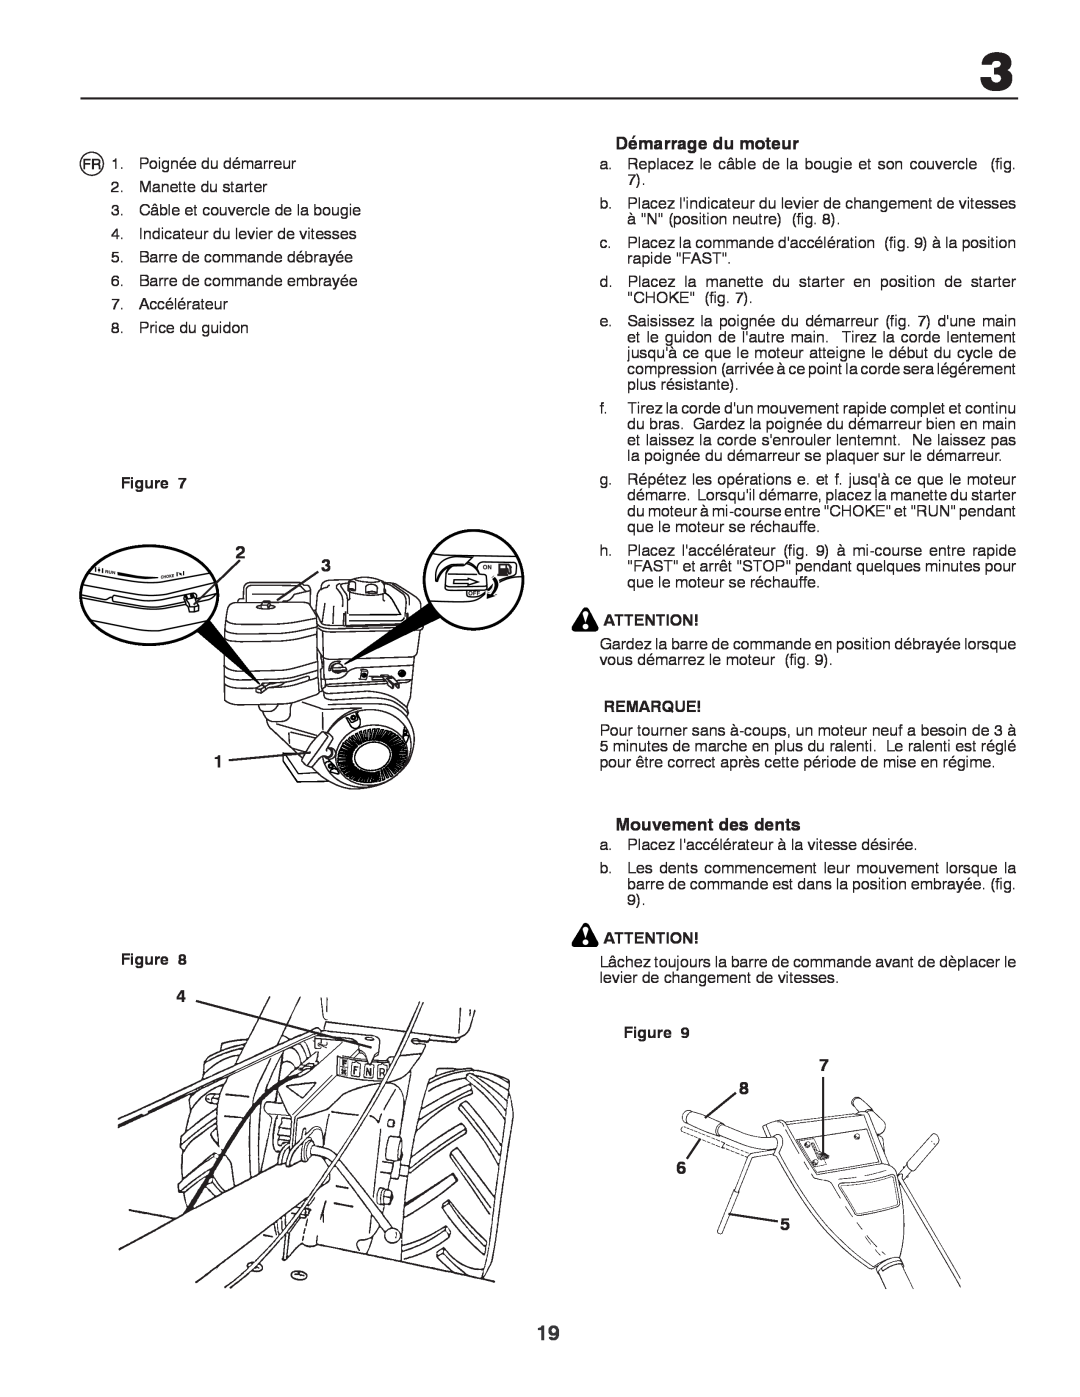 Husqvarna CRT81 instruction manual Démarrage du moteur, Mouvement des dents, Remarque 